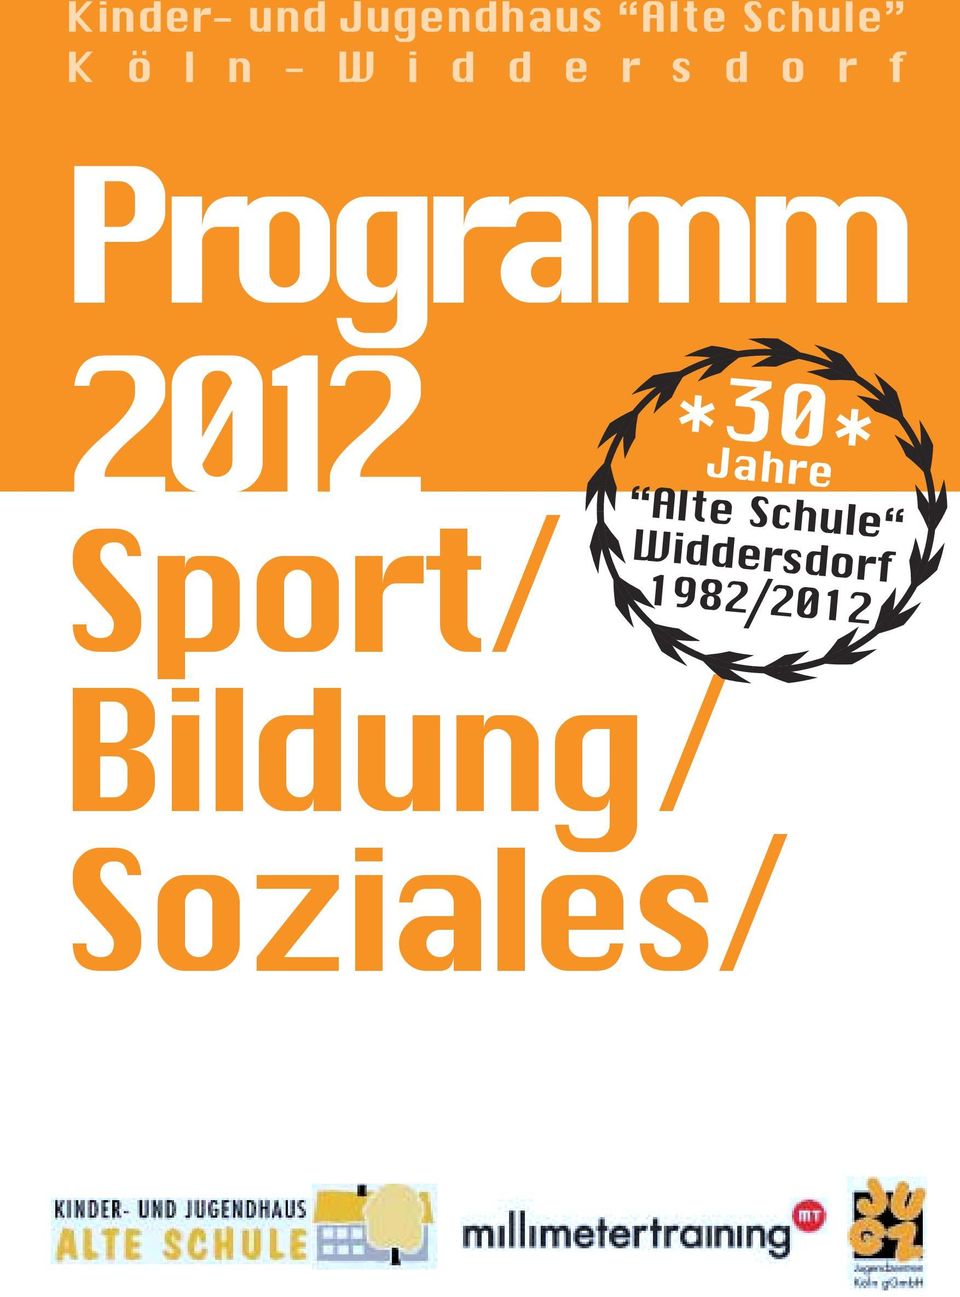 Programm 2012 Sport/ *30* Jahre Alte